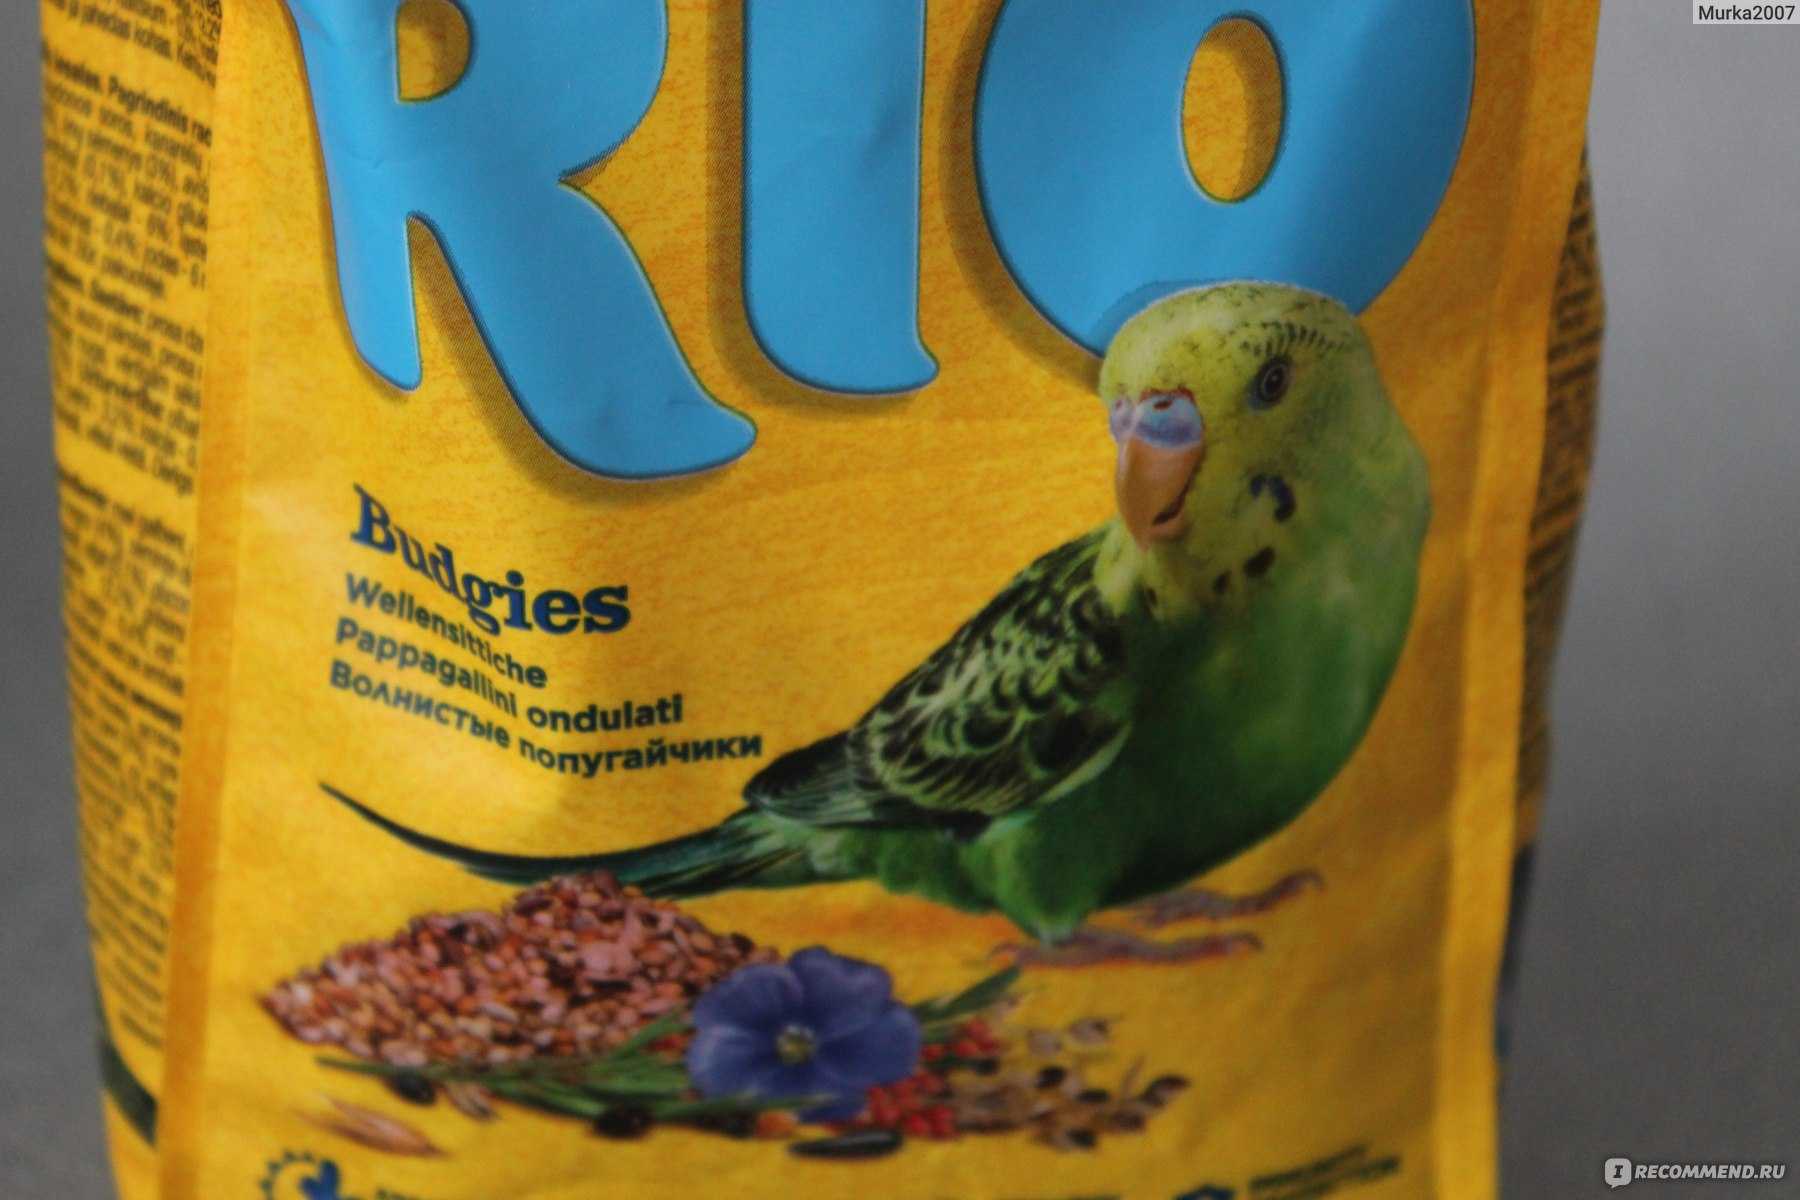 Какой корм лучше для волнистых попугаев: рио, престиж, фиори?